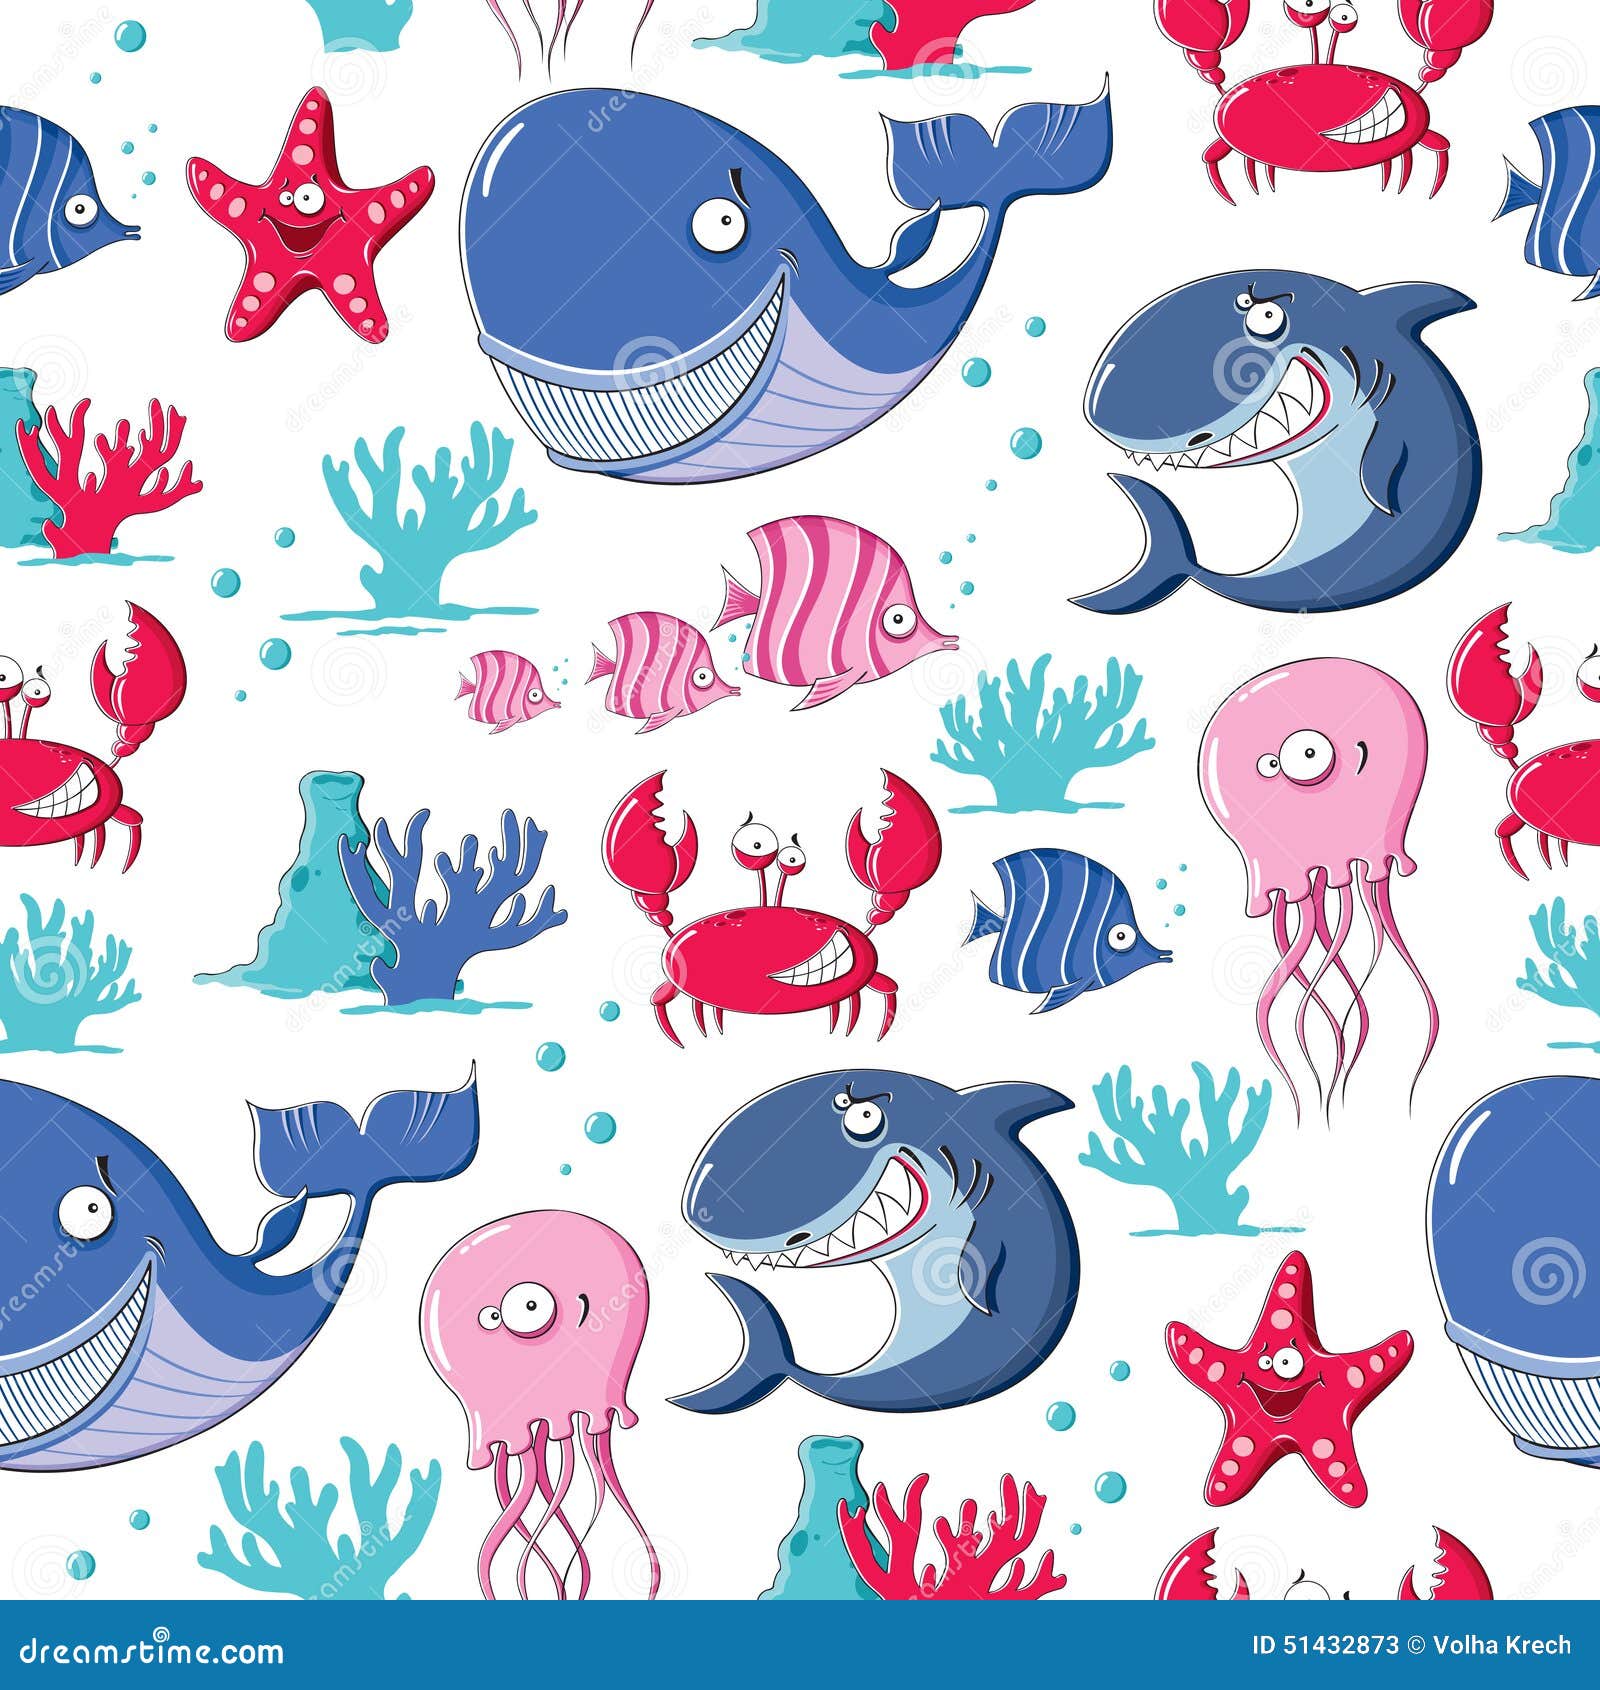 Ocean Underwater World Animals Fish Wallpaper Hd  Wallpapers13com